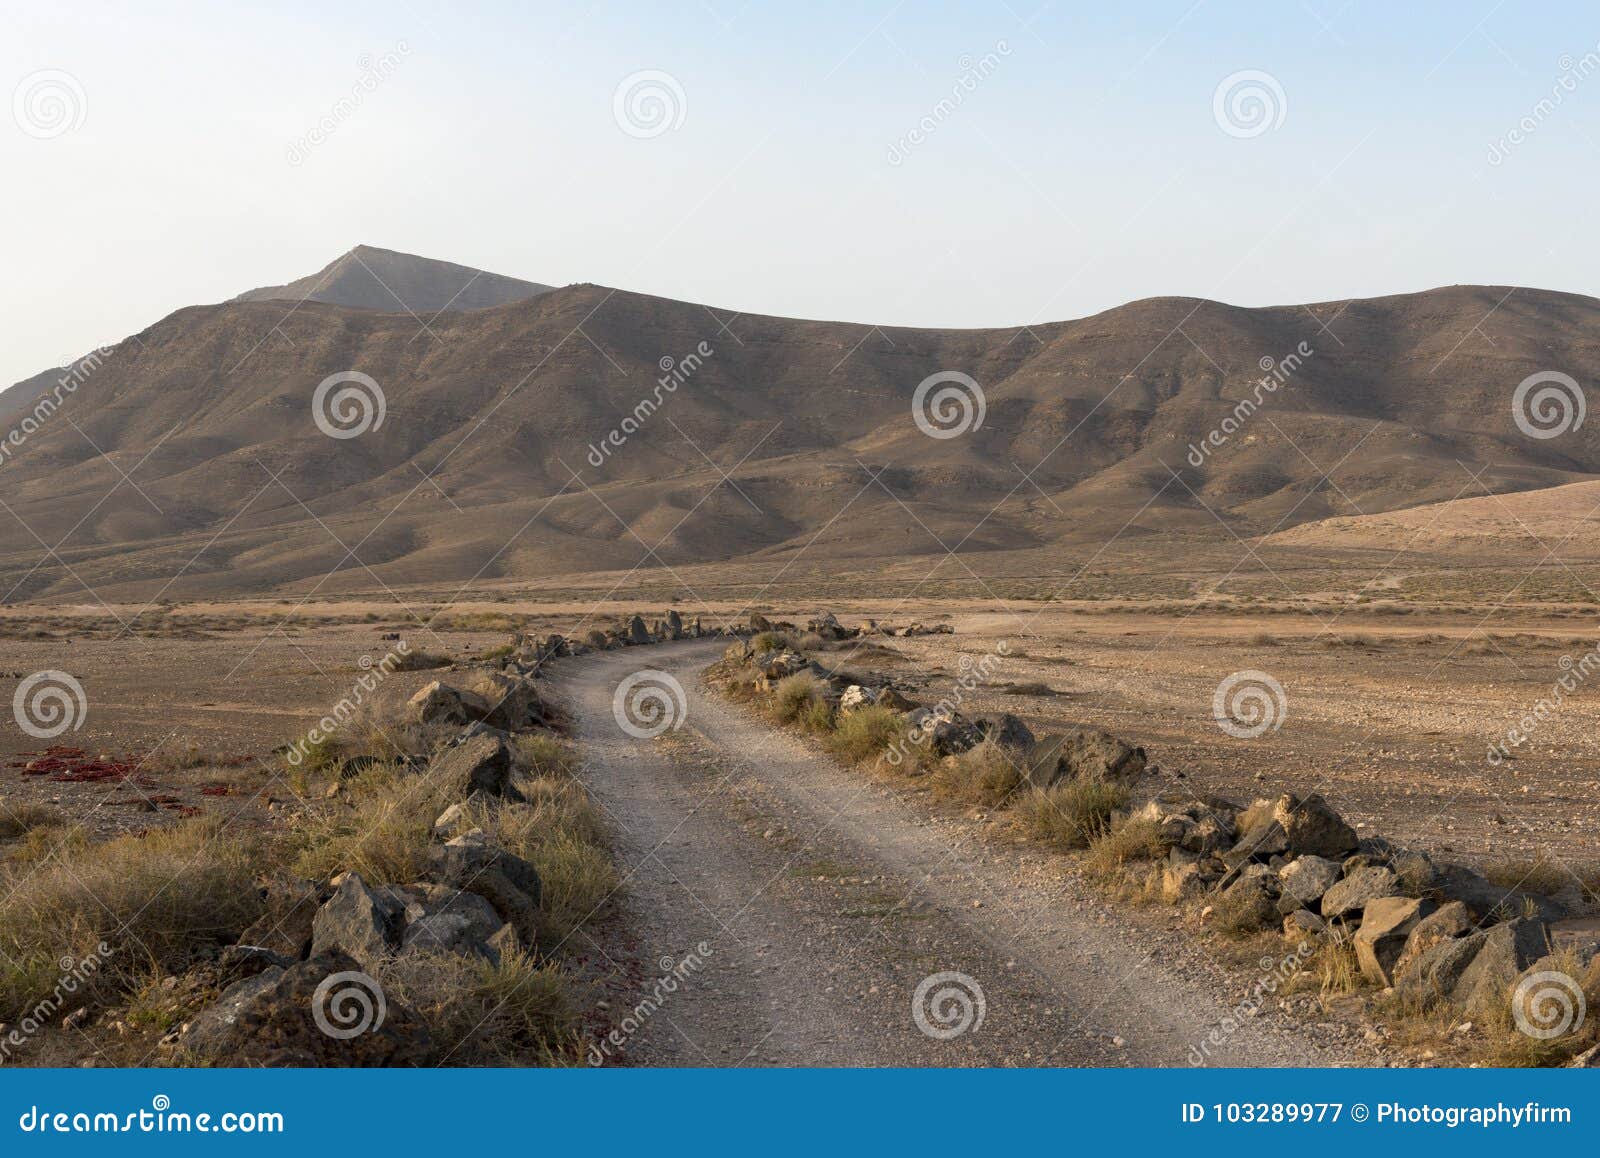 dusty track looking towards montana roja